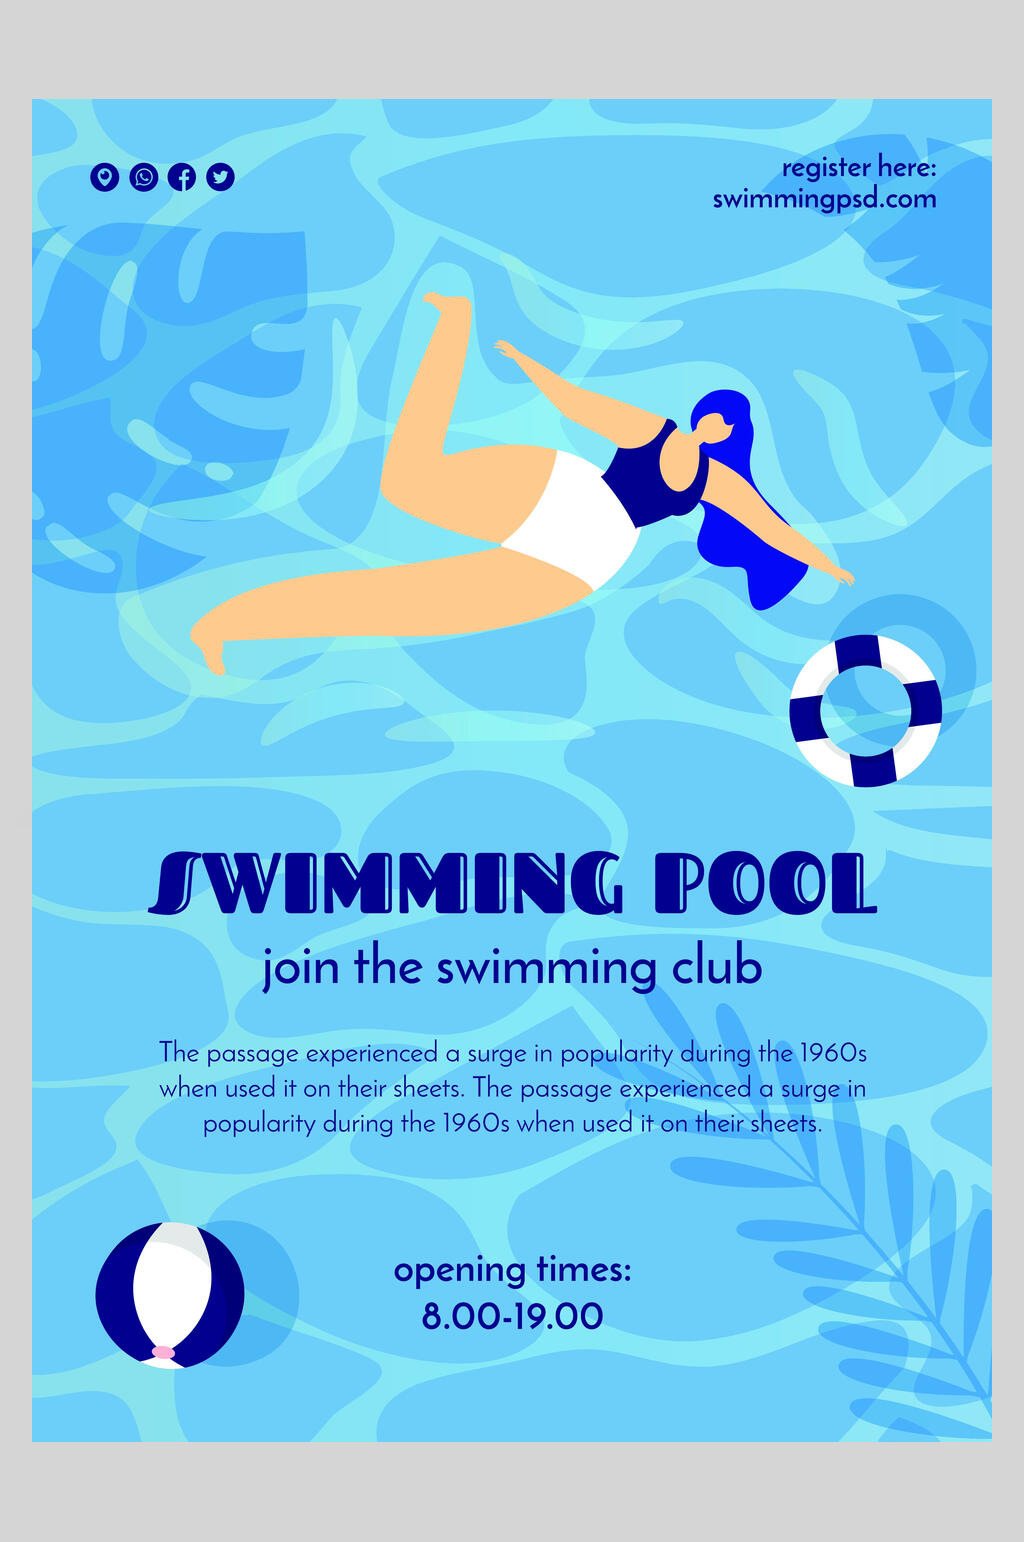 游泳海报创意图片